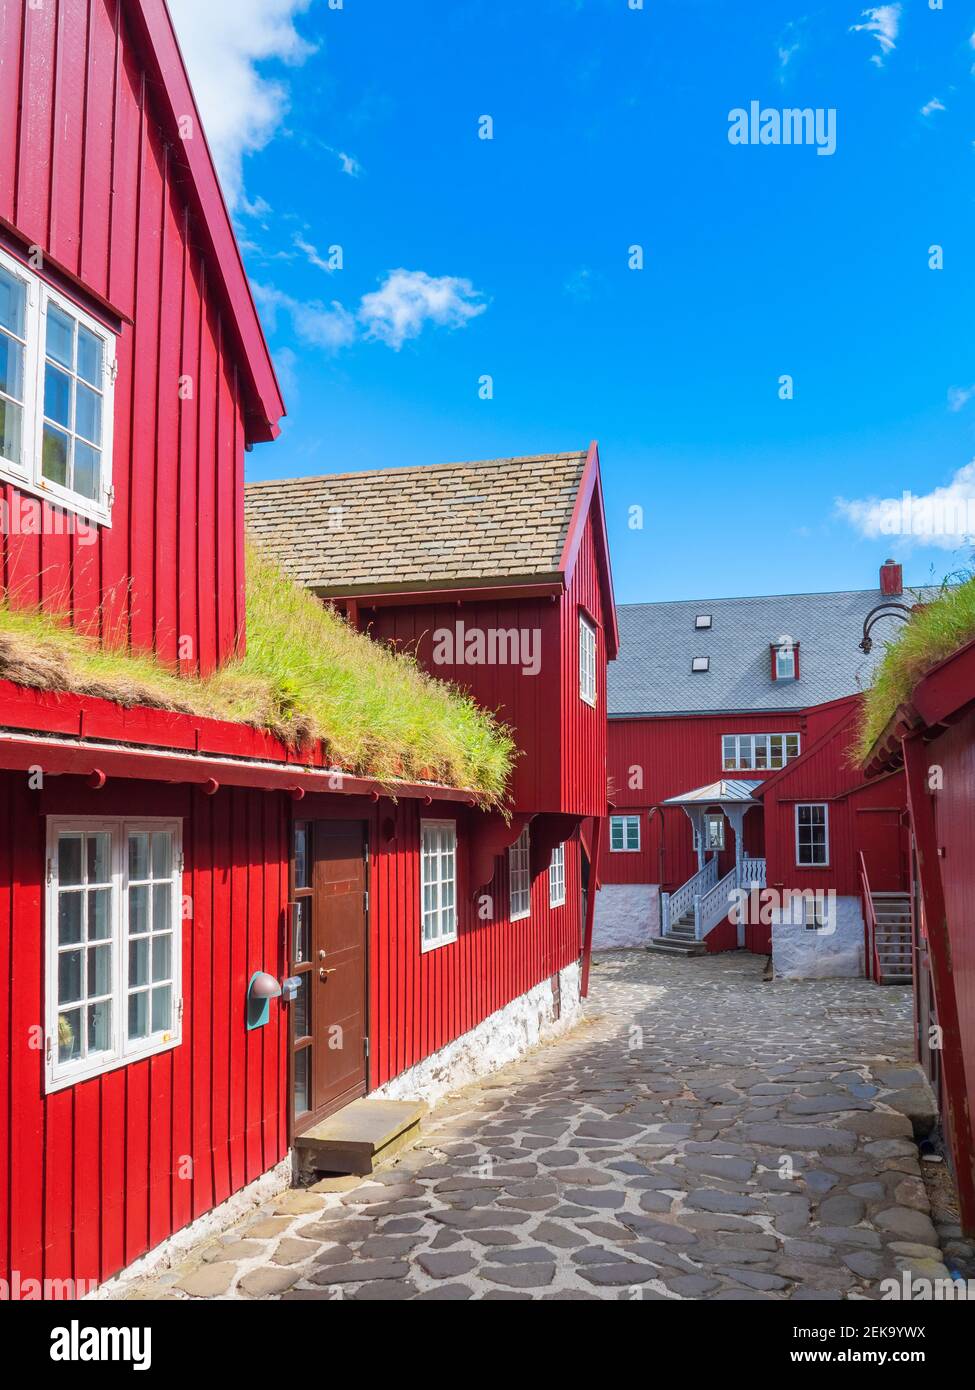 Gasse zwischen roten Häusern gegen blauen Himmel, Torshavn, Färöer Inseln, Island Stockfoto